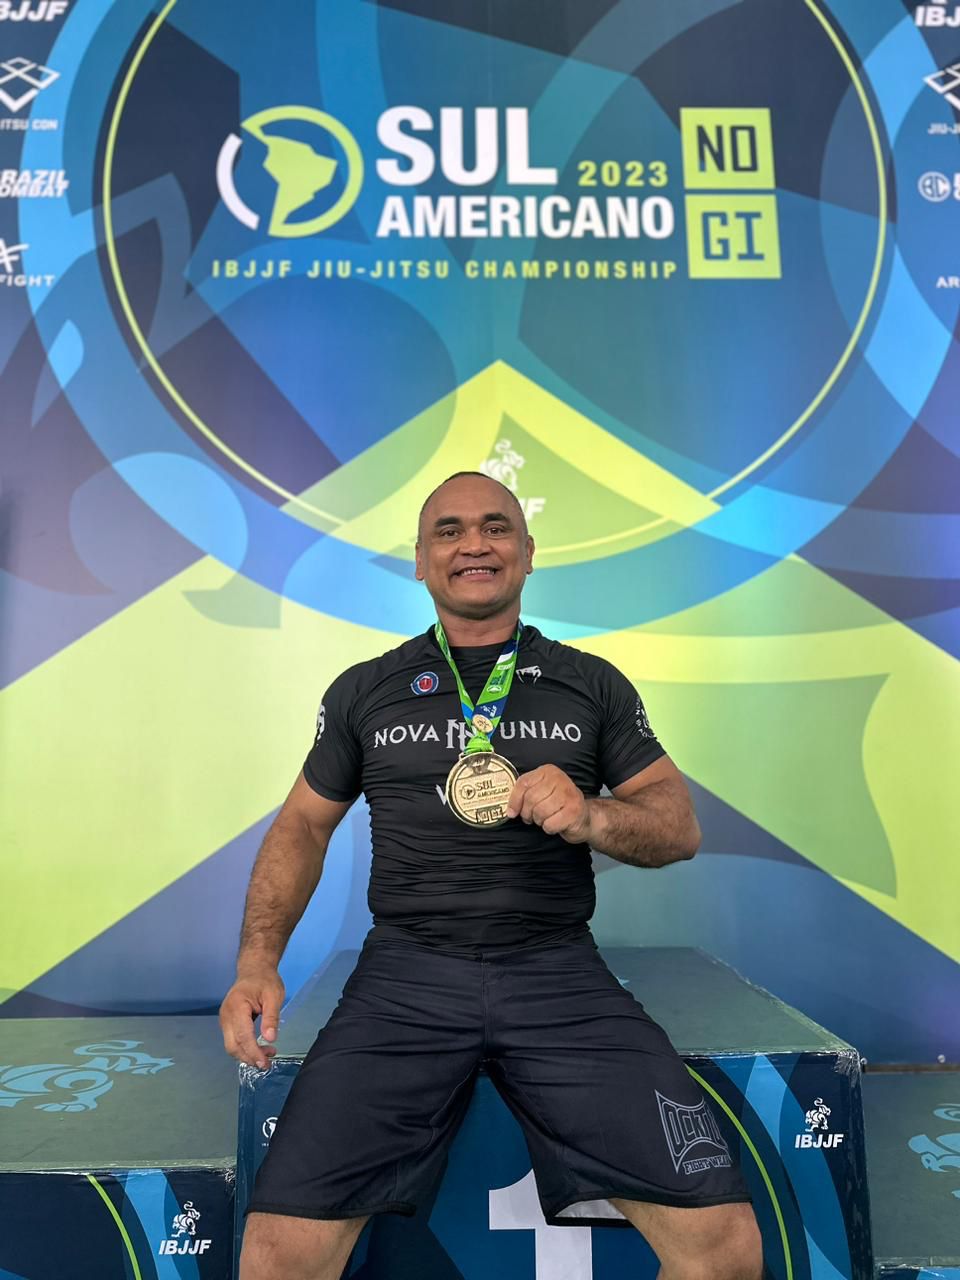 Sargento da PMCE conquista o Título de Campeão Sul-Americano de Jiu-Jitsu  NoGi 2023 - Polícia Militar